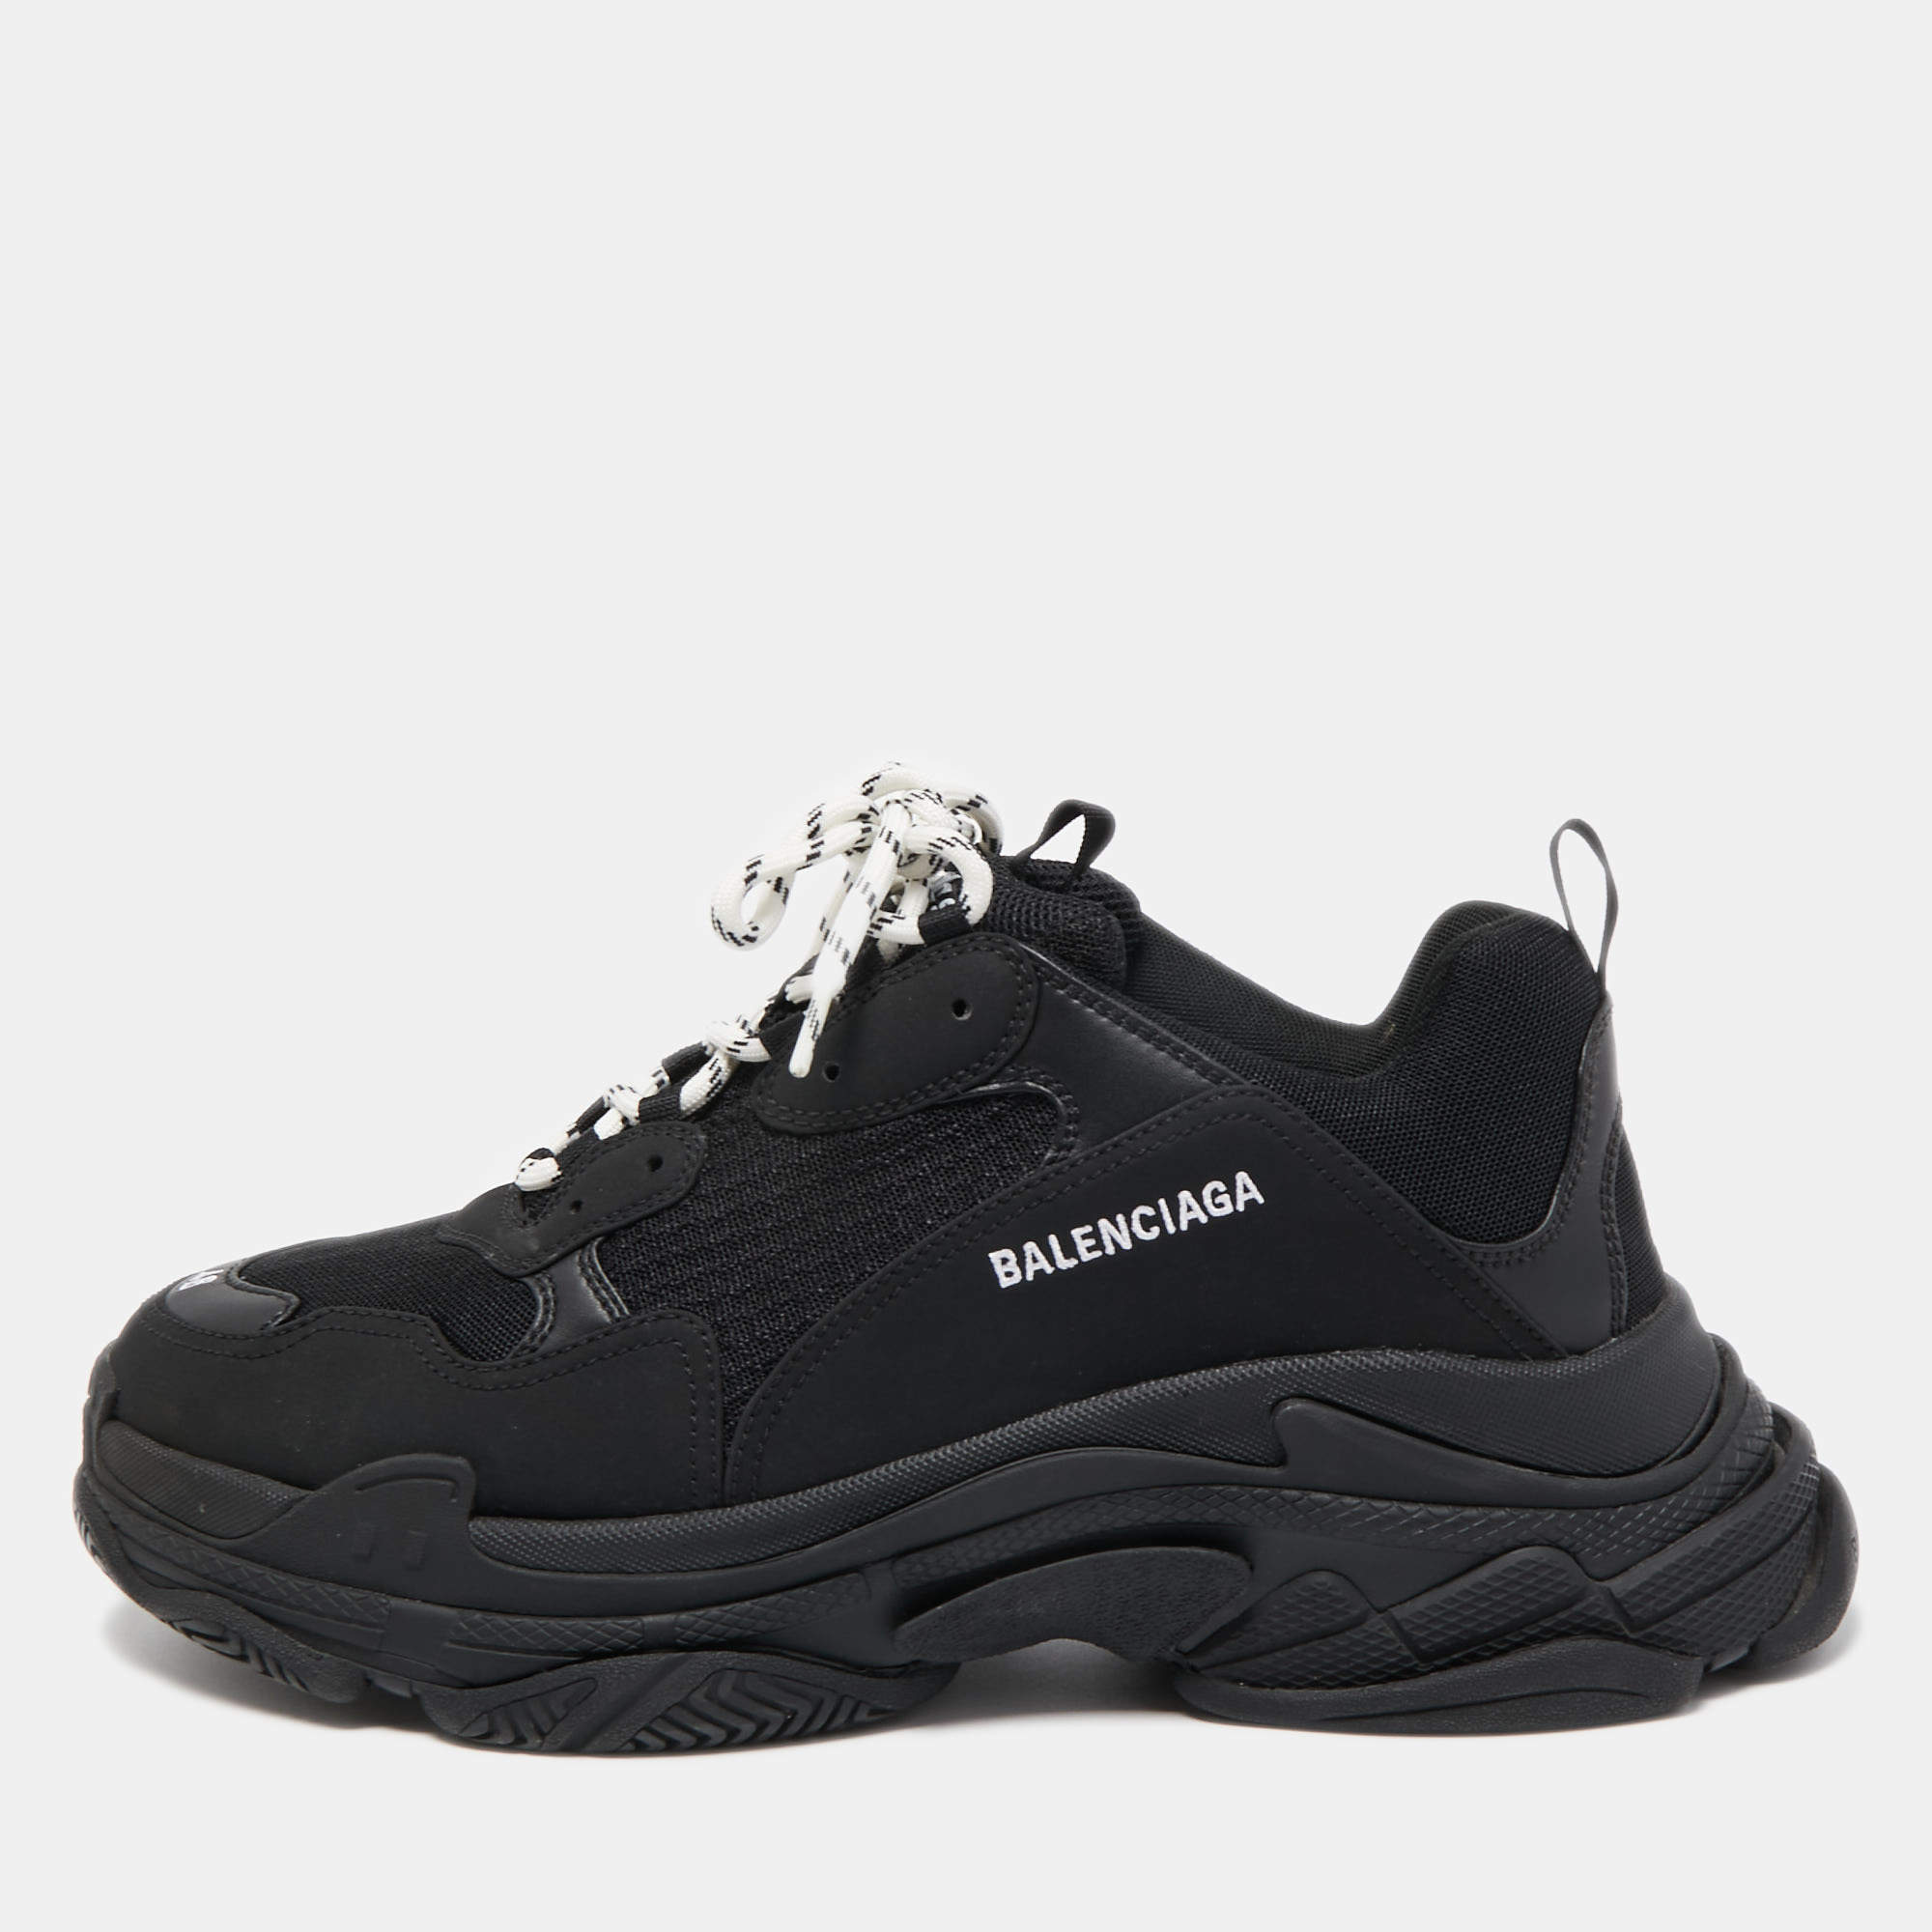 Balenciaga Sneakers for Men